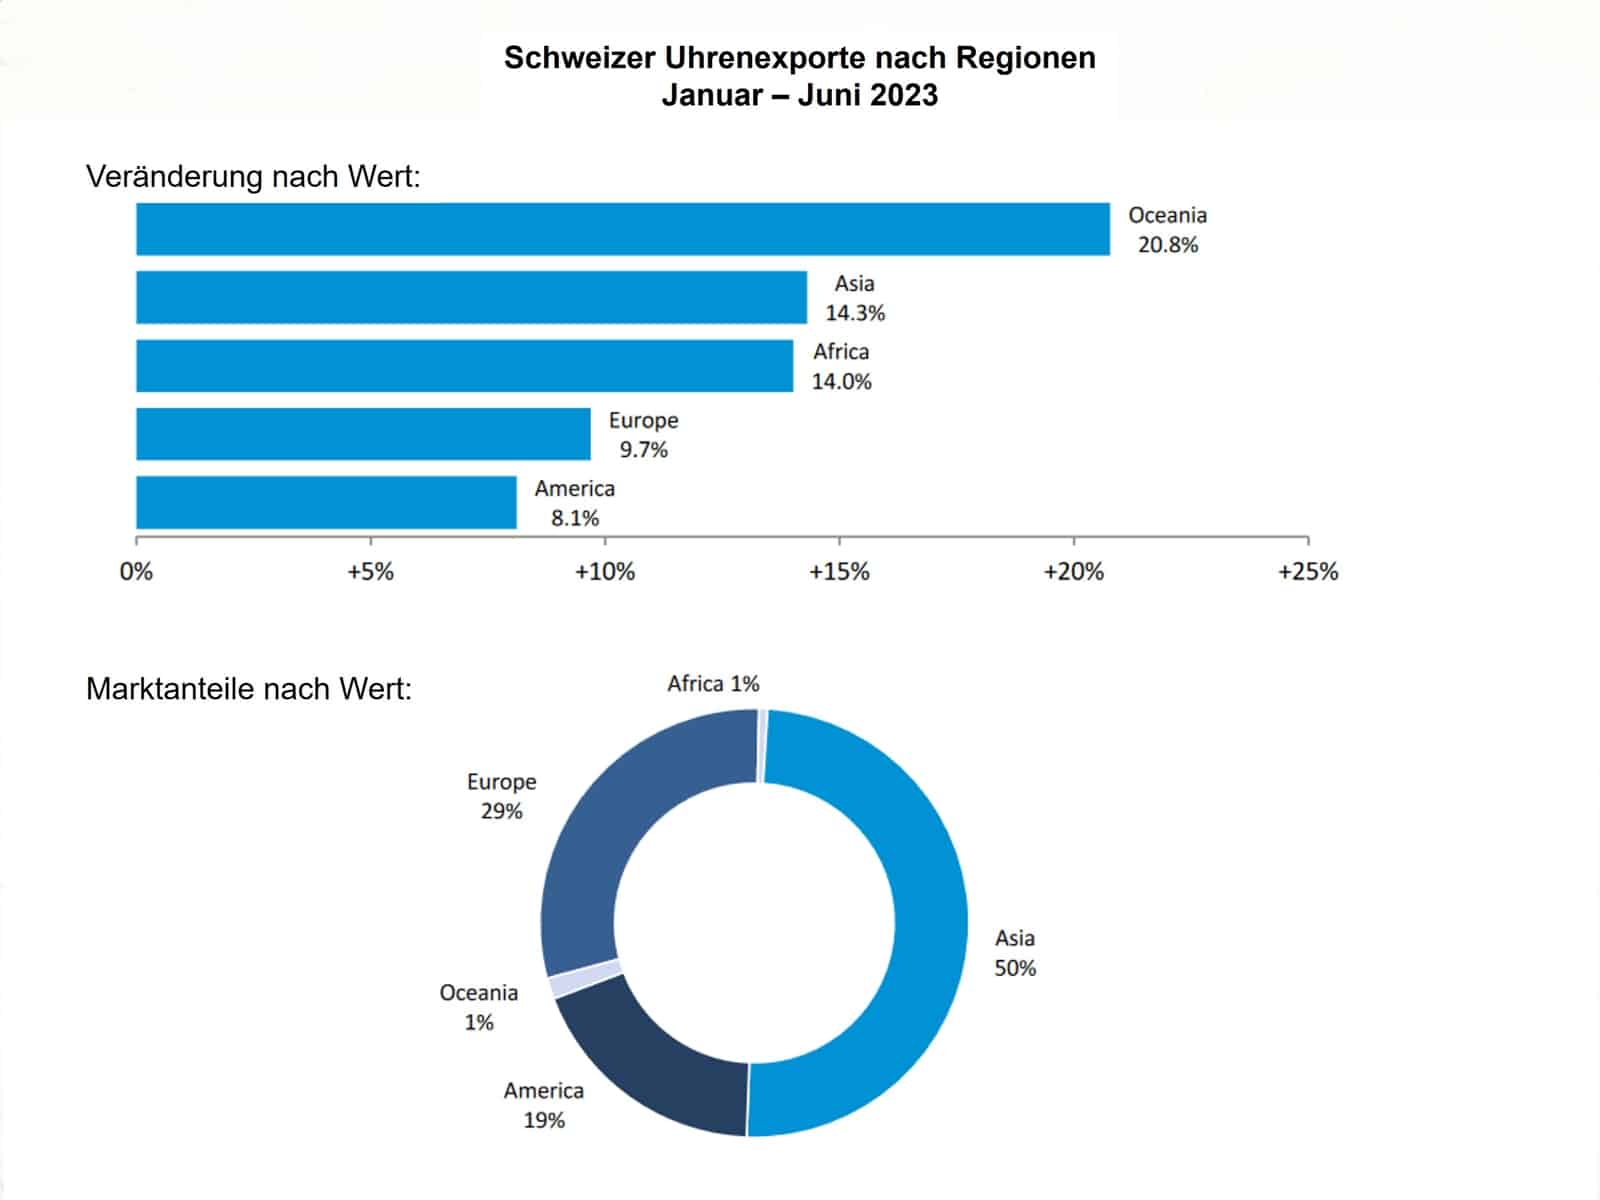 Schweizer Uhrenexporte nach Regionen 1. Halbjahr 2023 - Quelle FHS